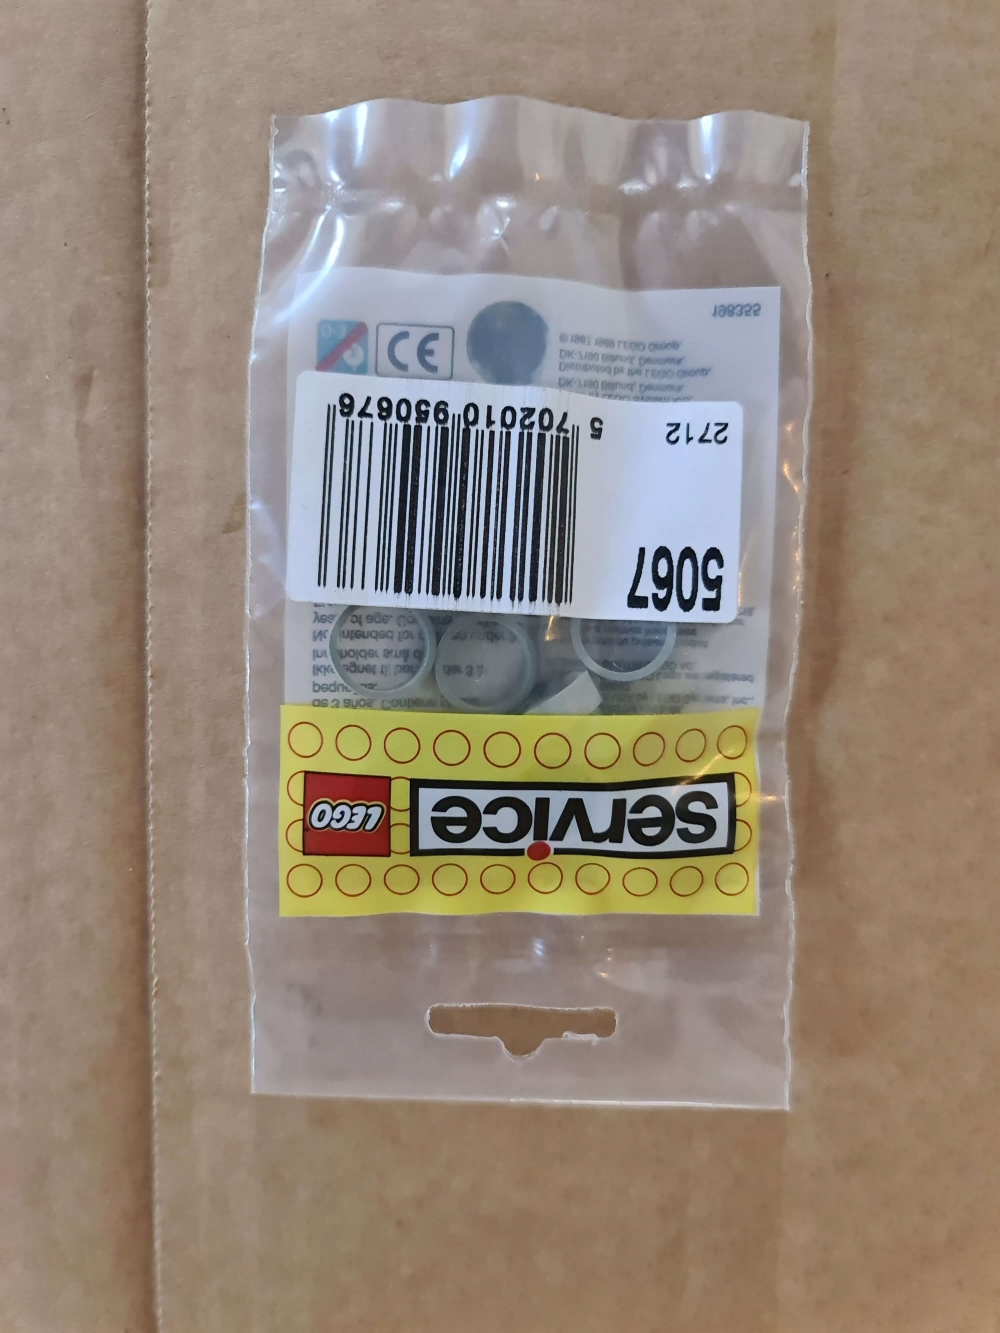 Sett (sparepart) 5067 fra Lego Train : 12V - Service Packs serien.
Nytt og forseglet.